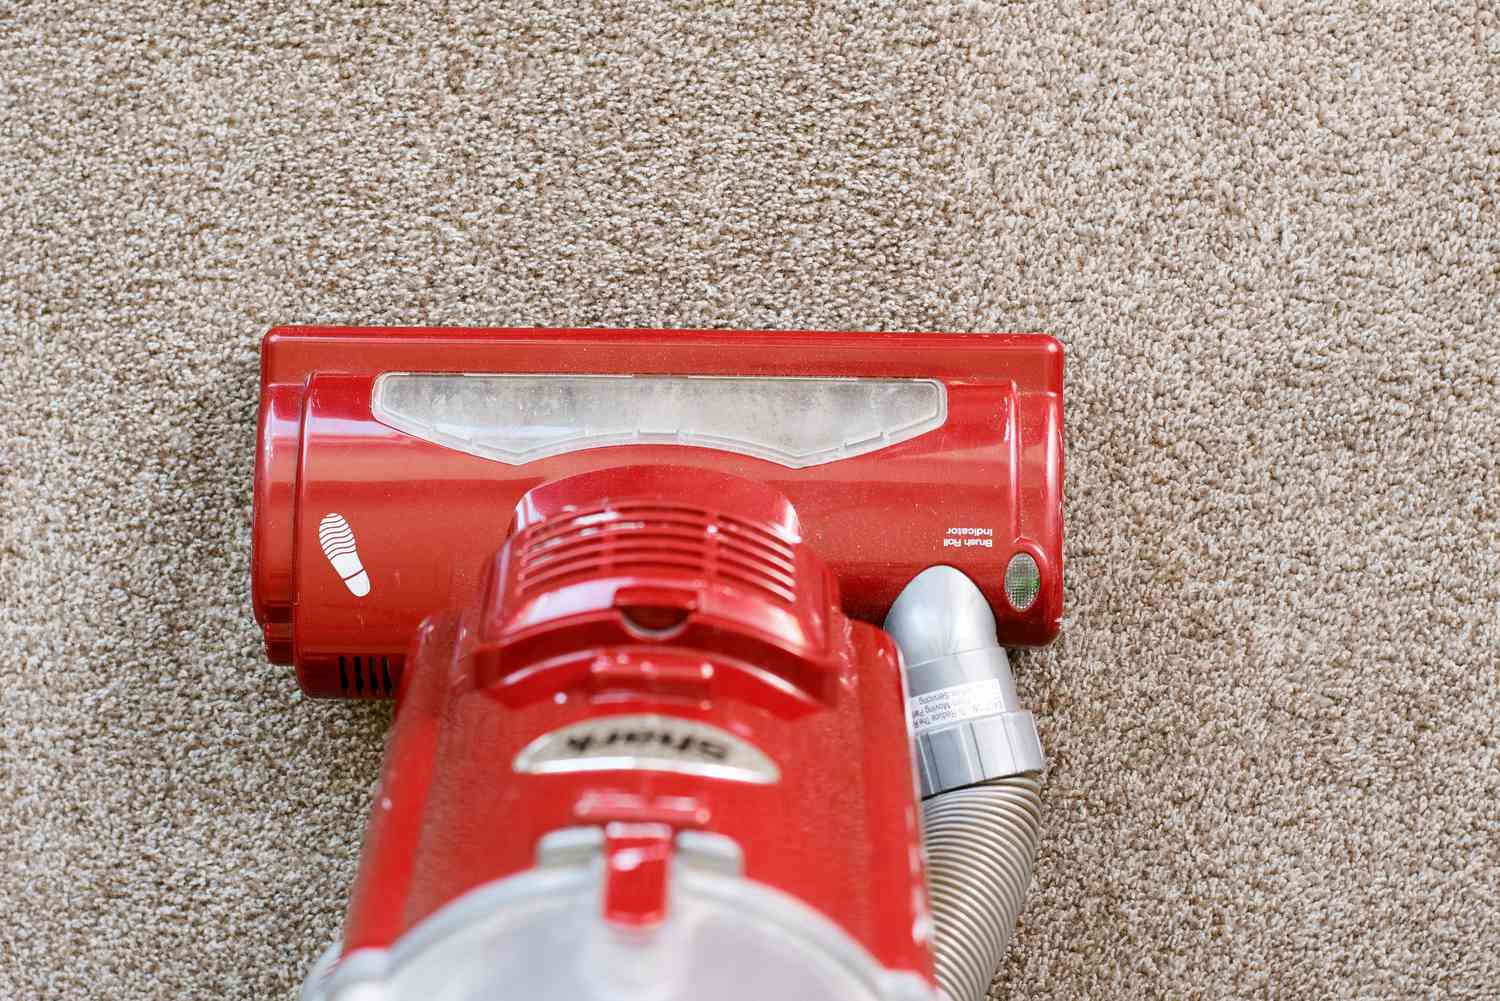 Aspirador vermelho passando sobre o carpete antes da limpeza com bicarbonato de sódio e sal